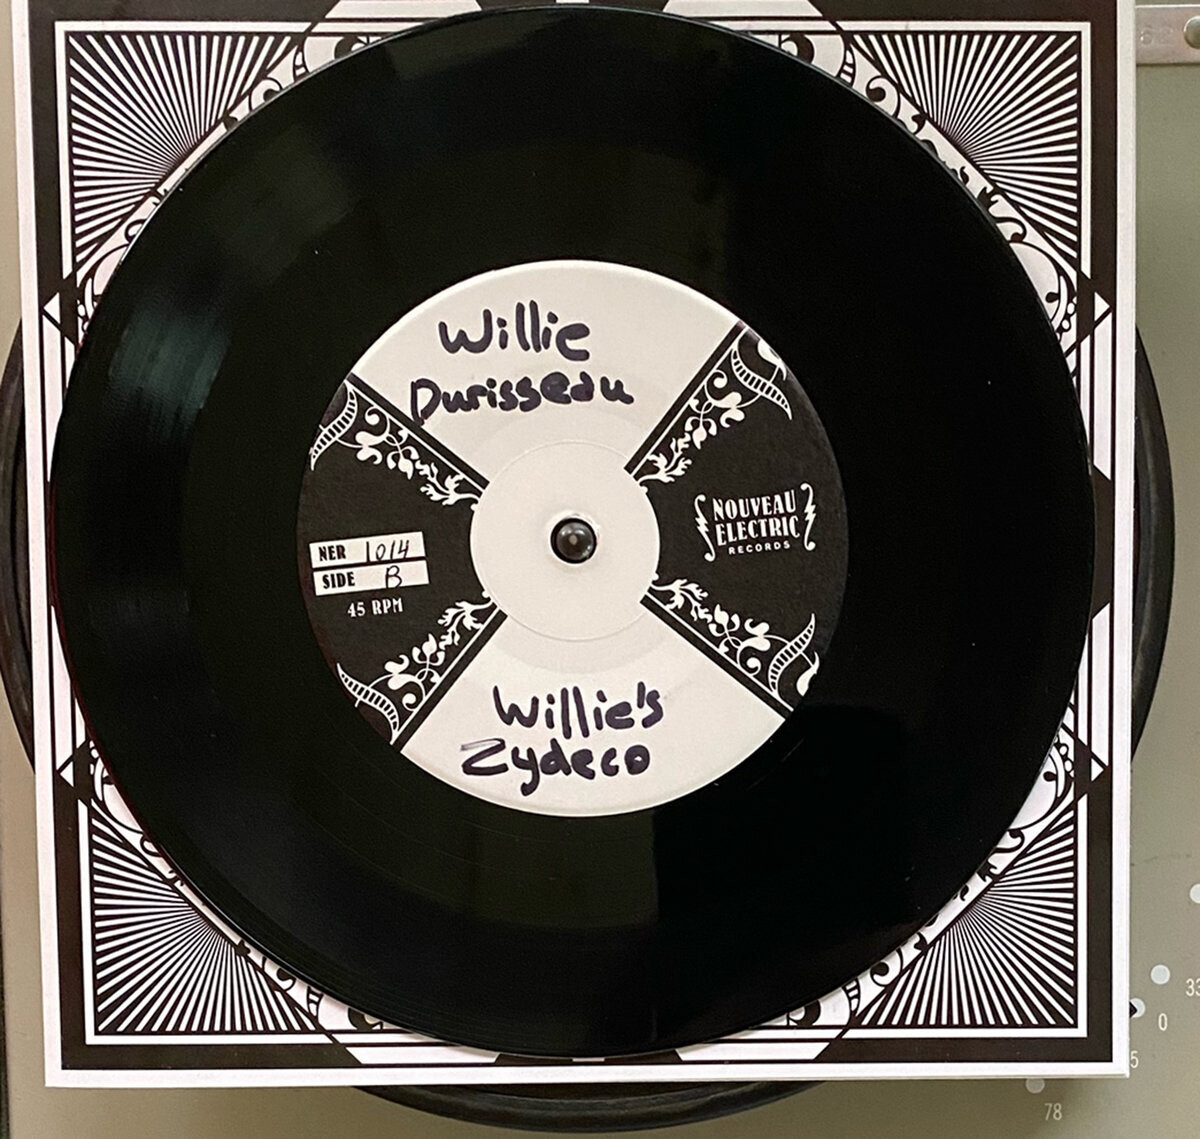 Willie Durisseau "Blues à Durisseau / Willie’s Zydeco" *45* 2021